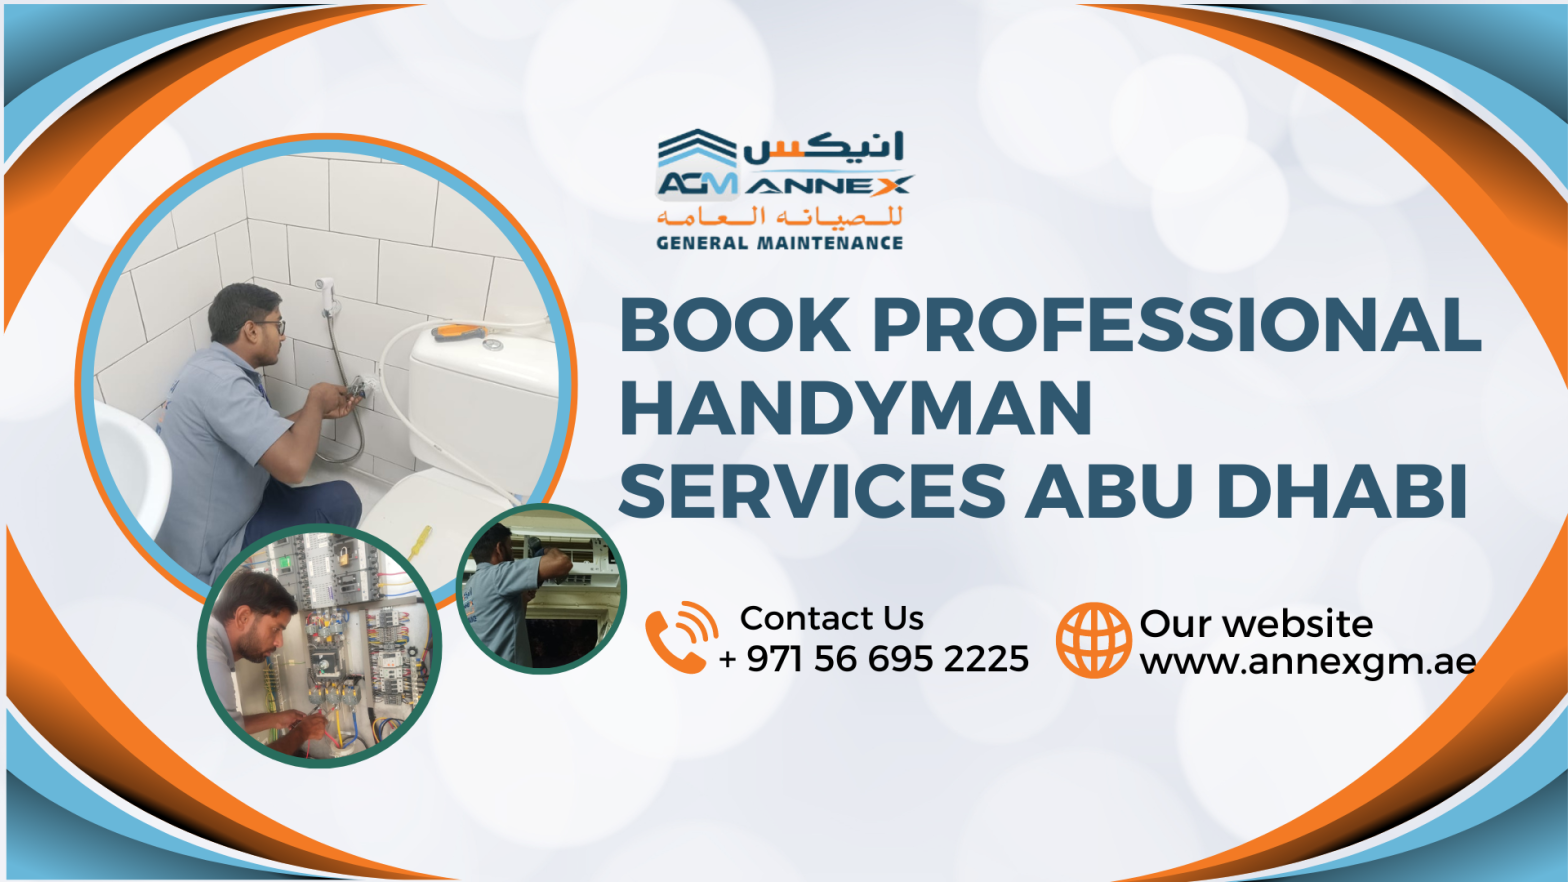 Handyman Services in Abu Dhabi